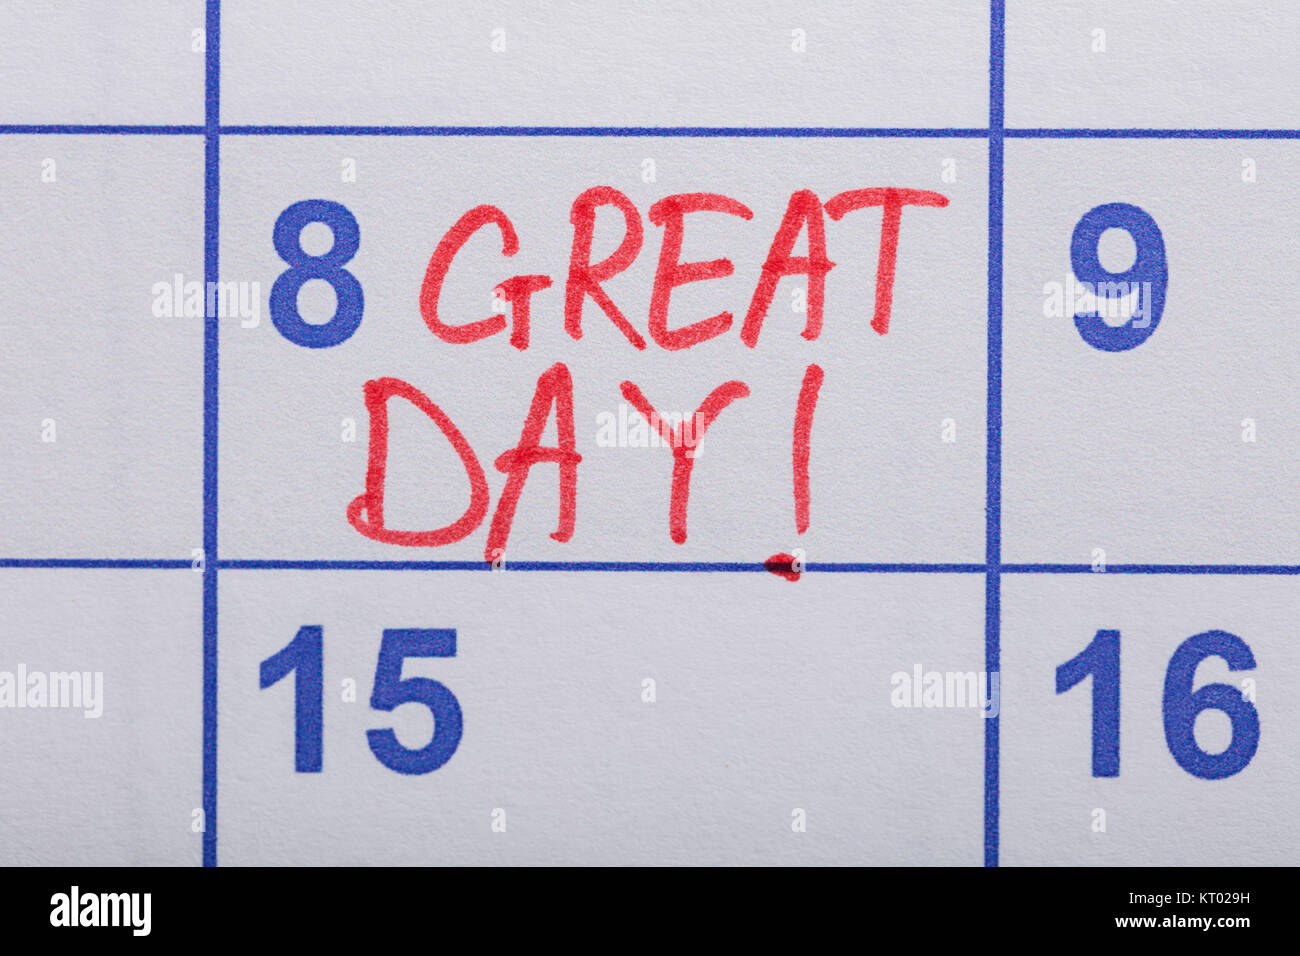 Gran Día de texto escrito en un calendario Foto de stock